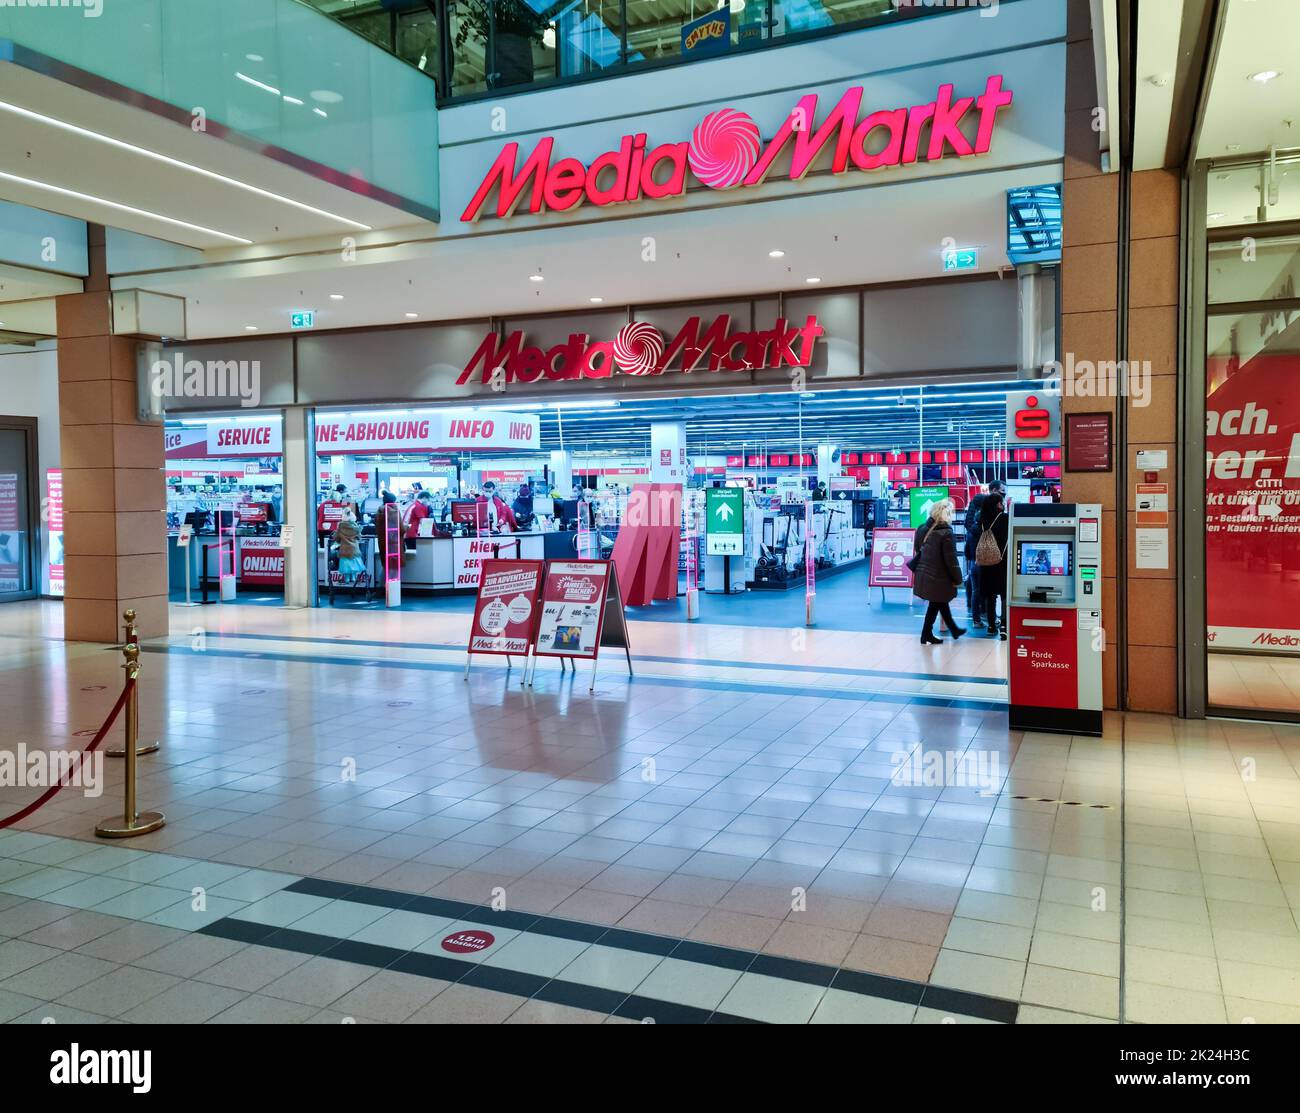 The entrance area of a MediaMarkt shop in a shopping centre Stock Photo